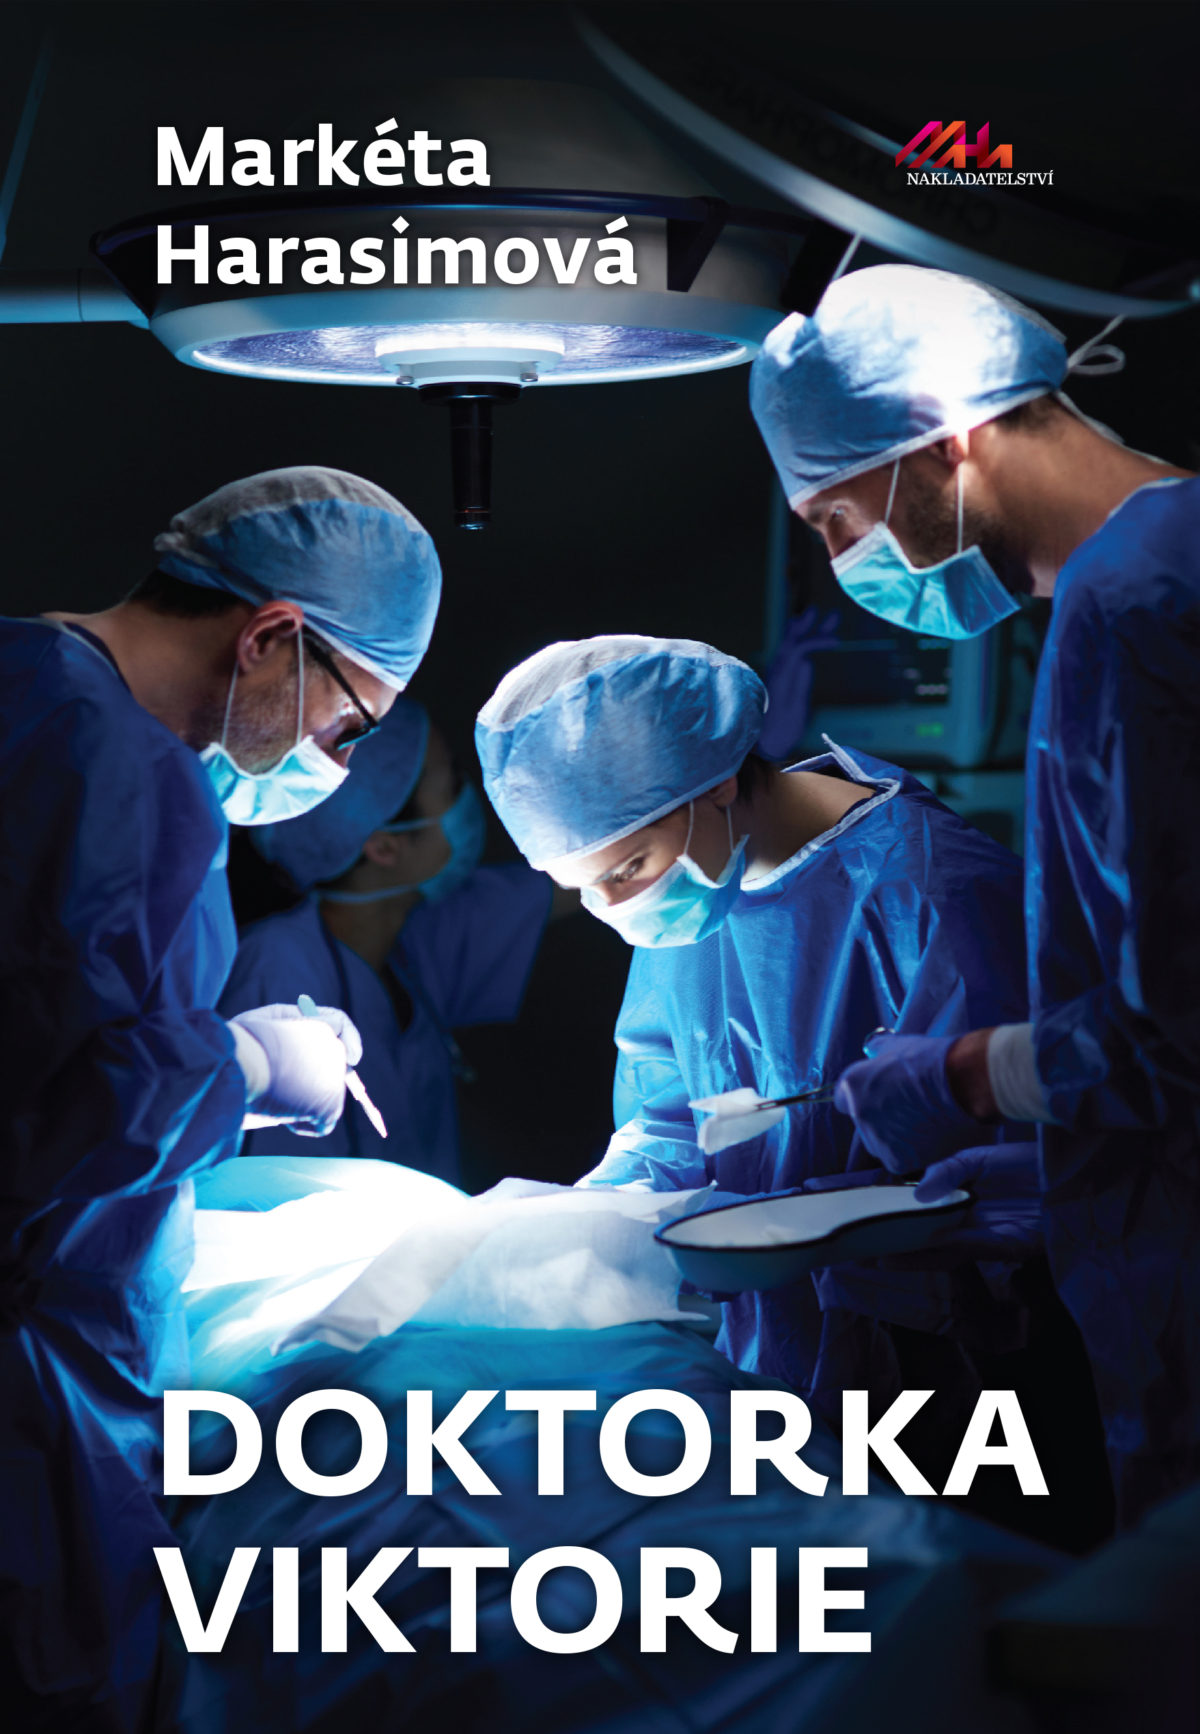 Nový román Markéty Harasimové: Právě vychází Doktorka Viktorie!